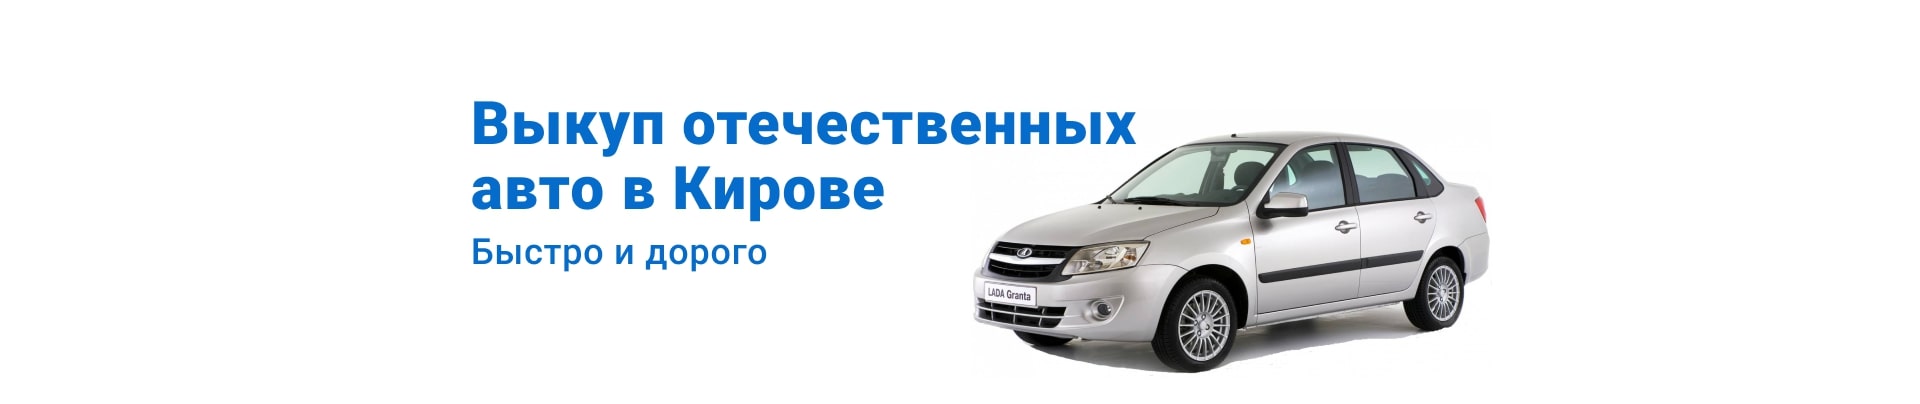 Выкуп отечественных авто в Кирове